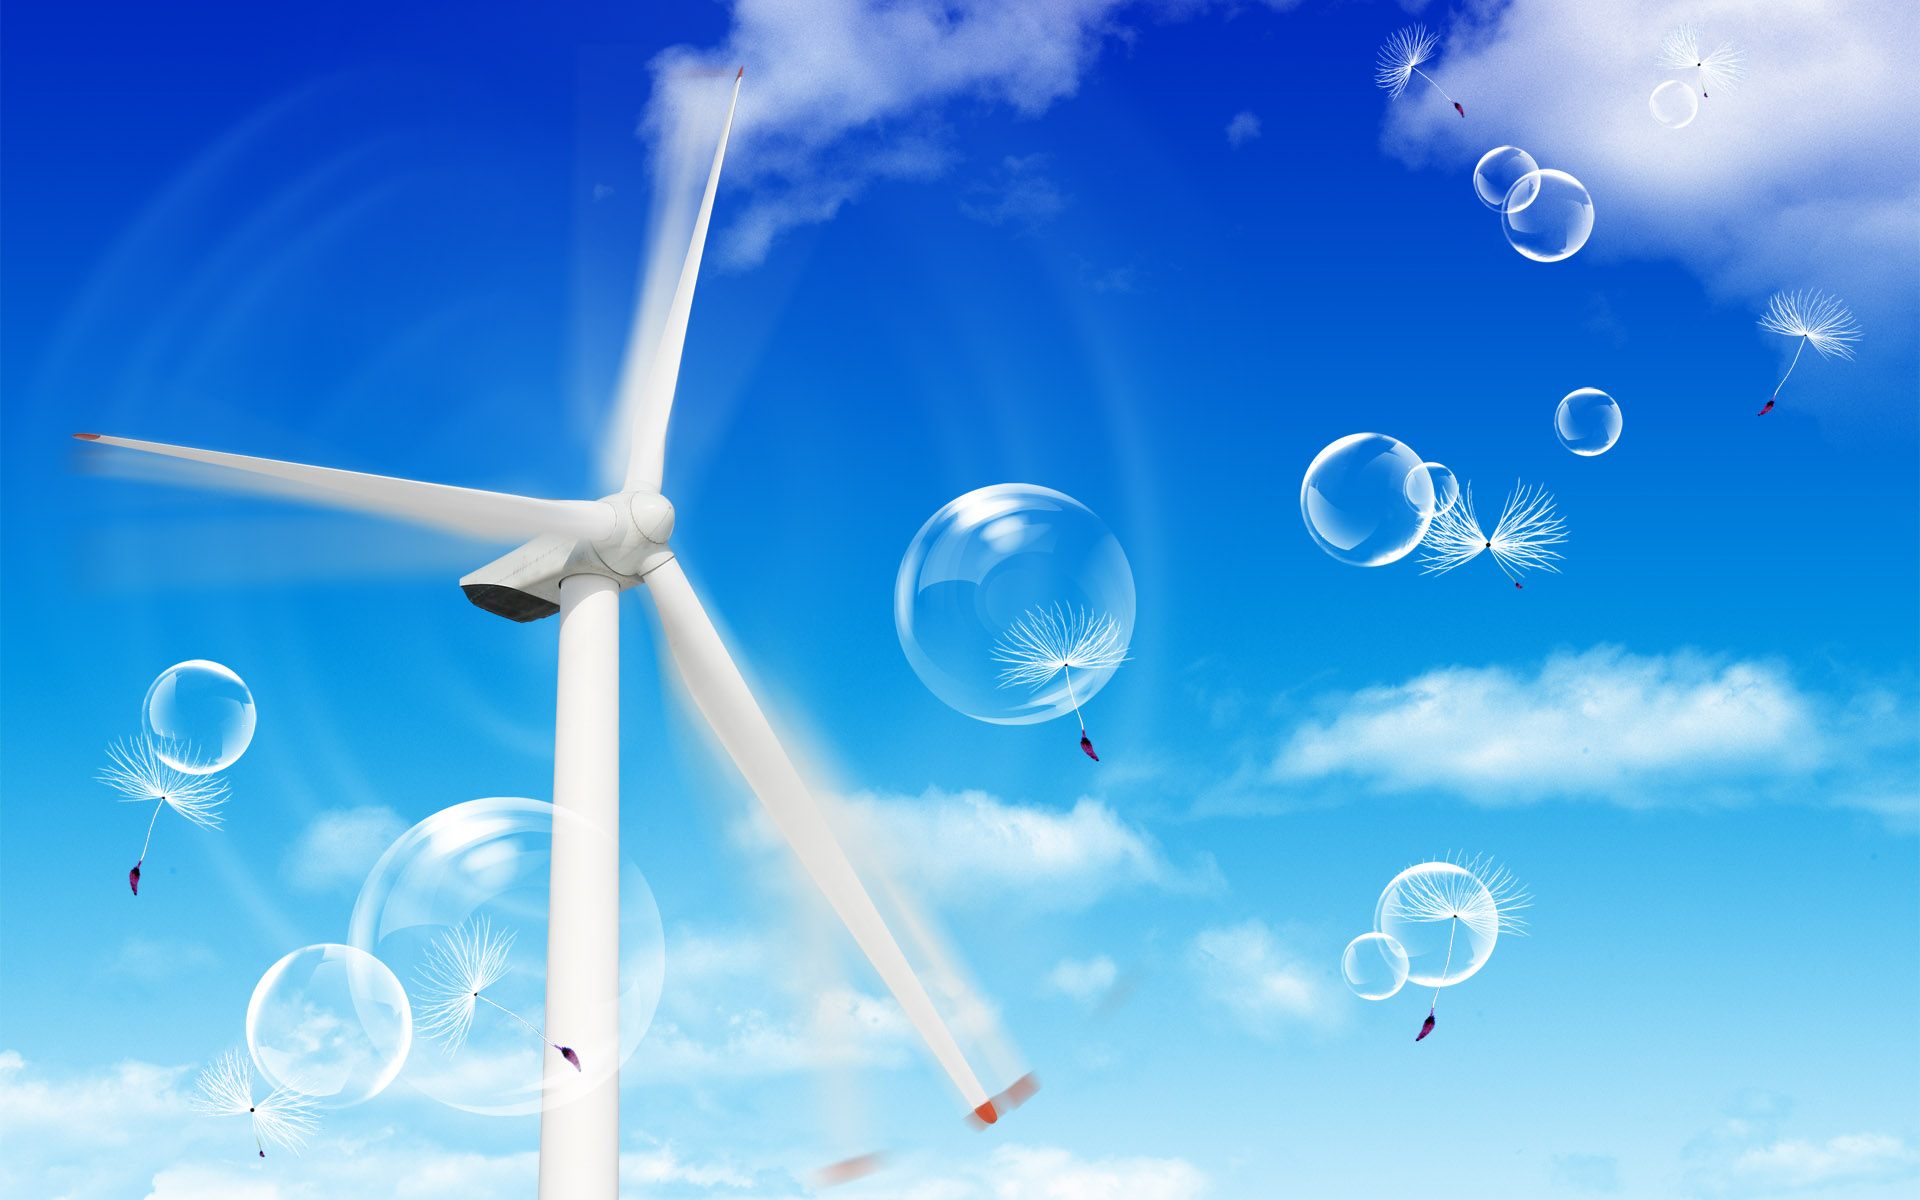 bubbles, dandelions, windmills, blue skies - desktop wallpaper